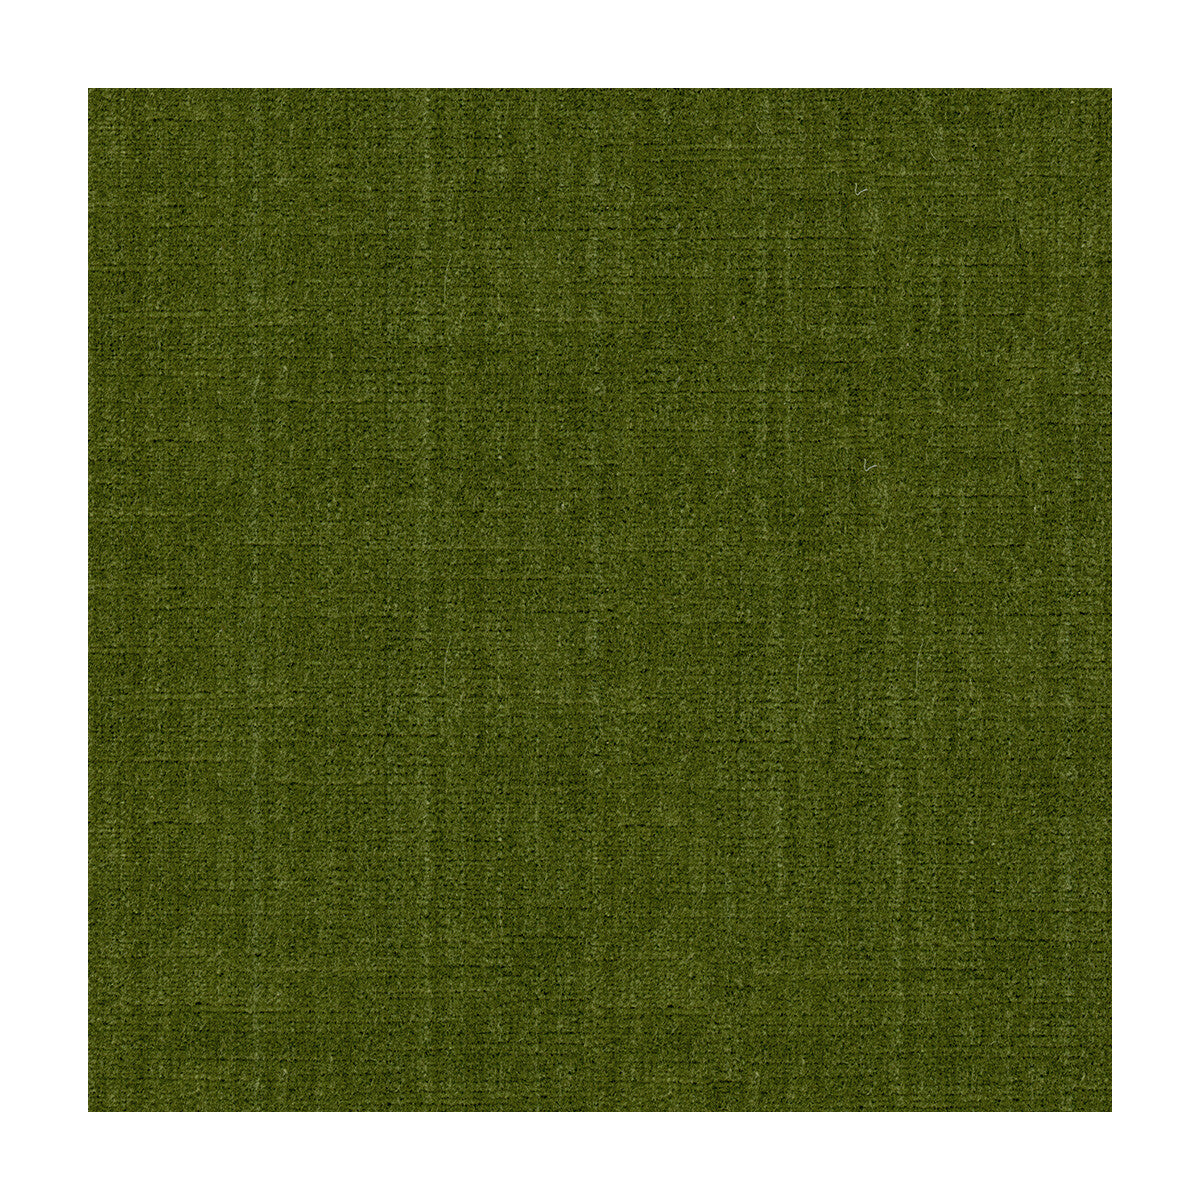 Kravet Design fabric in 29429-3 color - pattern 29429.3.0 - by Kravet Design